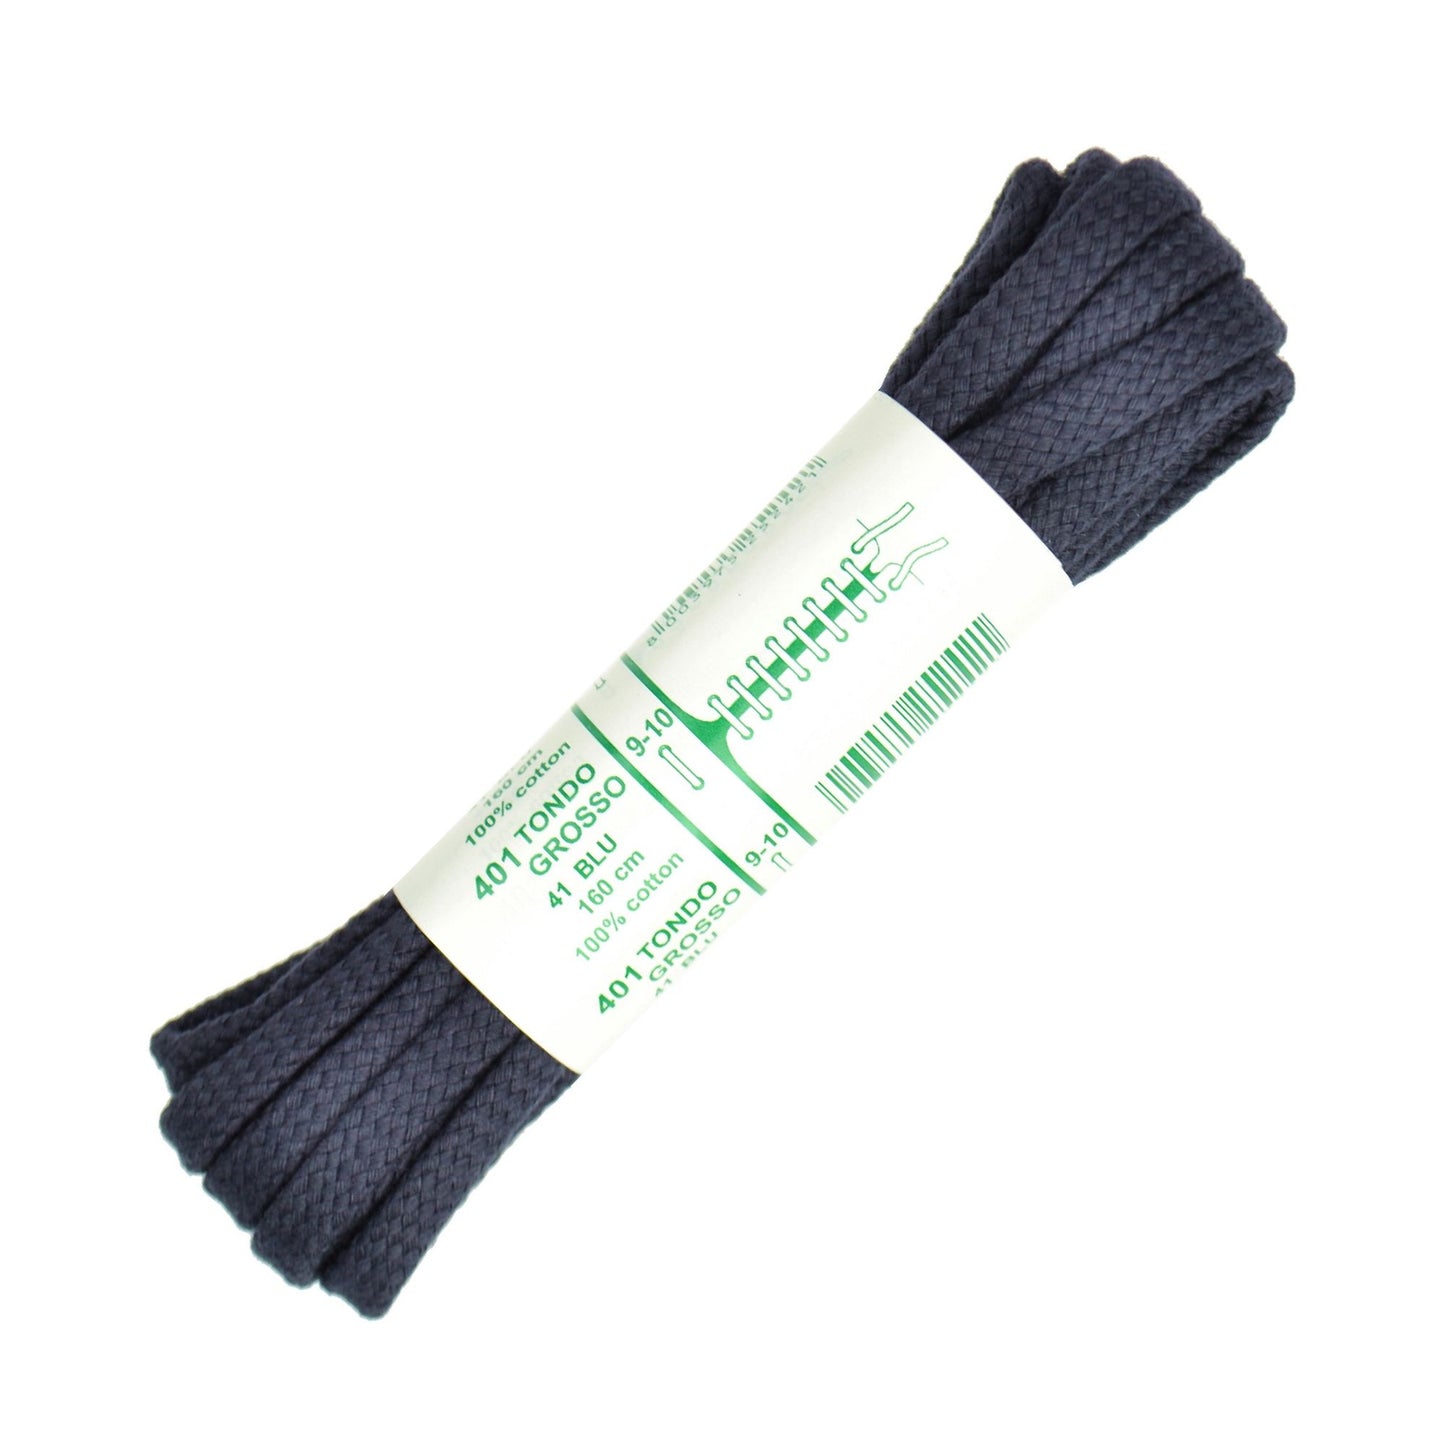 160cm Premium Cord Shoe Laces - Navy Blue 6mm